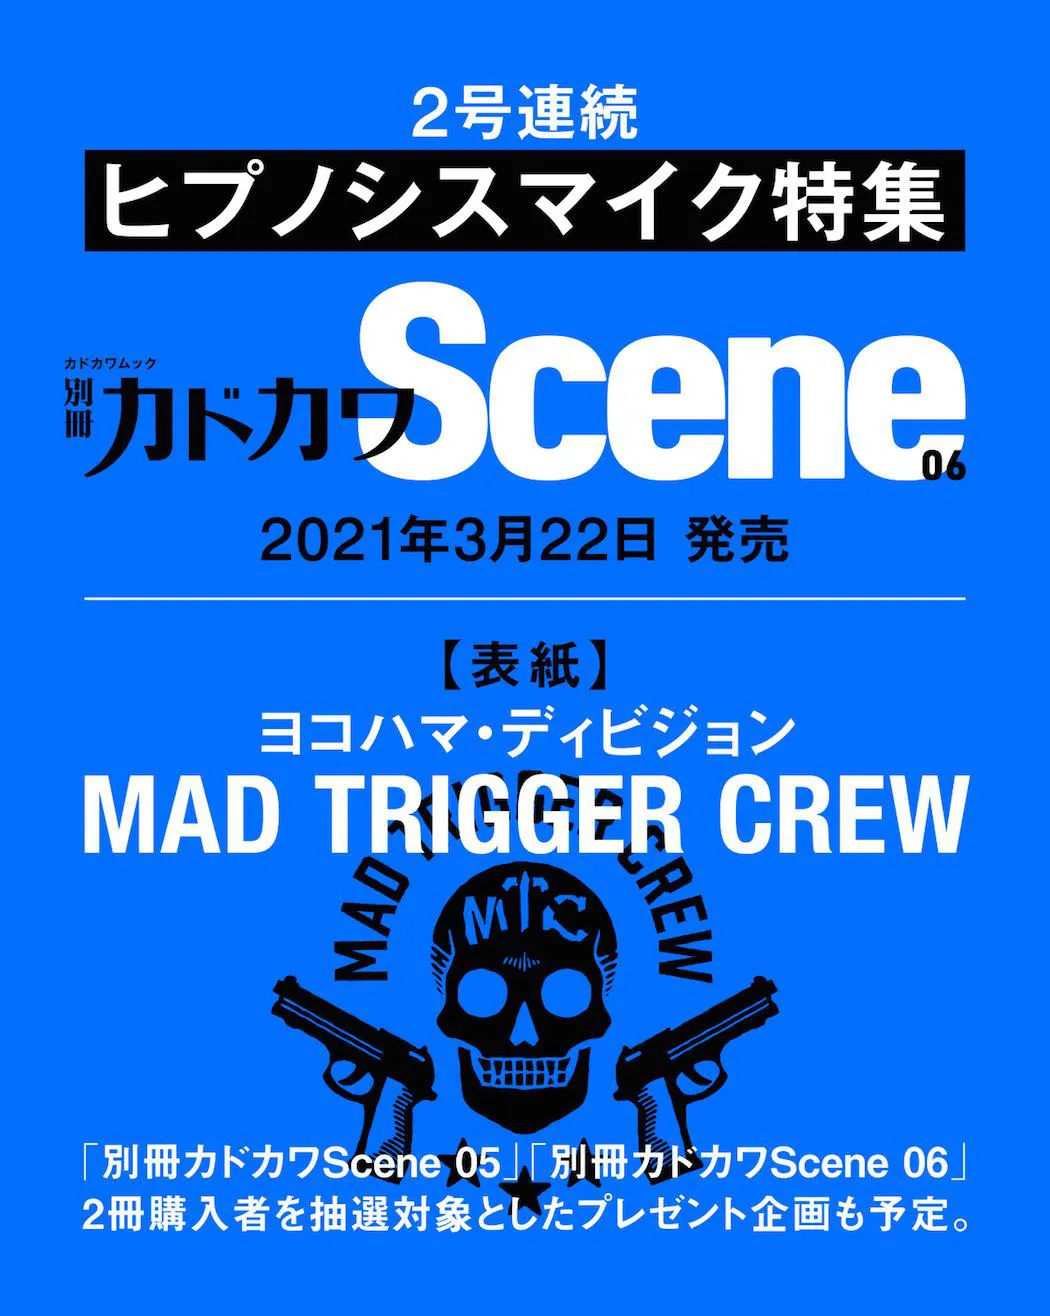 「別冊カドカワScene 06」は、ヨコハマ・ディビジョン／MAD TRIGGER CREWが表紙を飾る